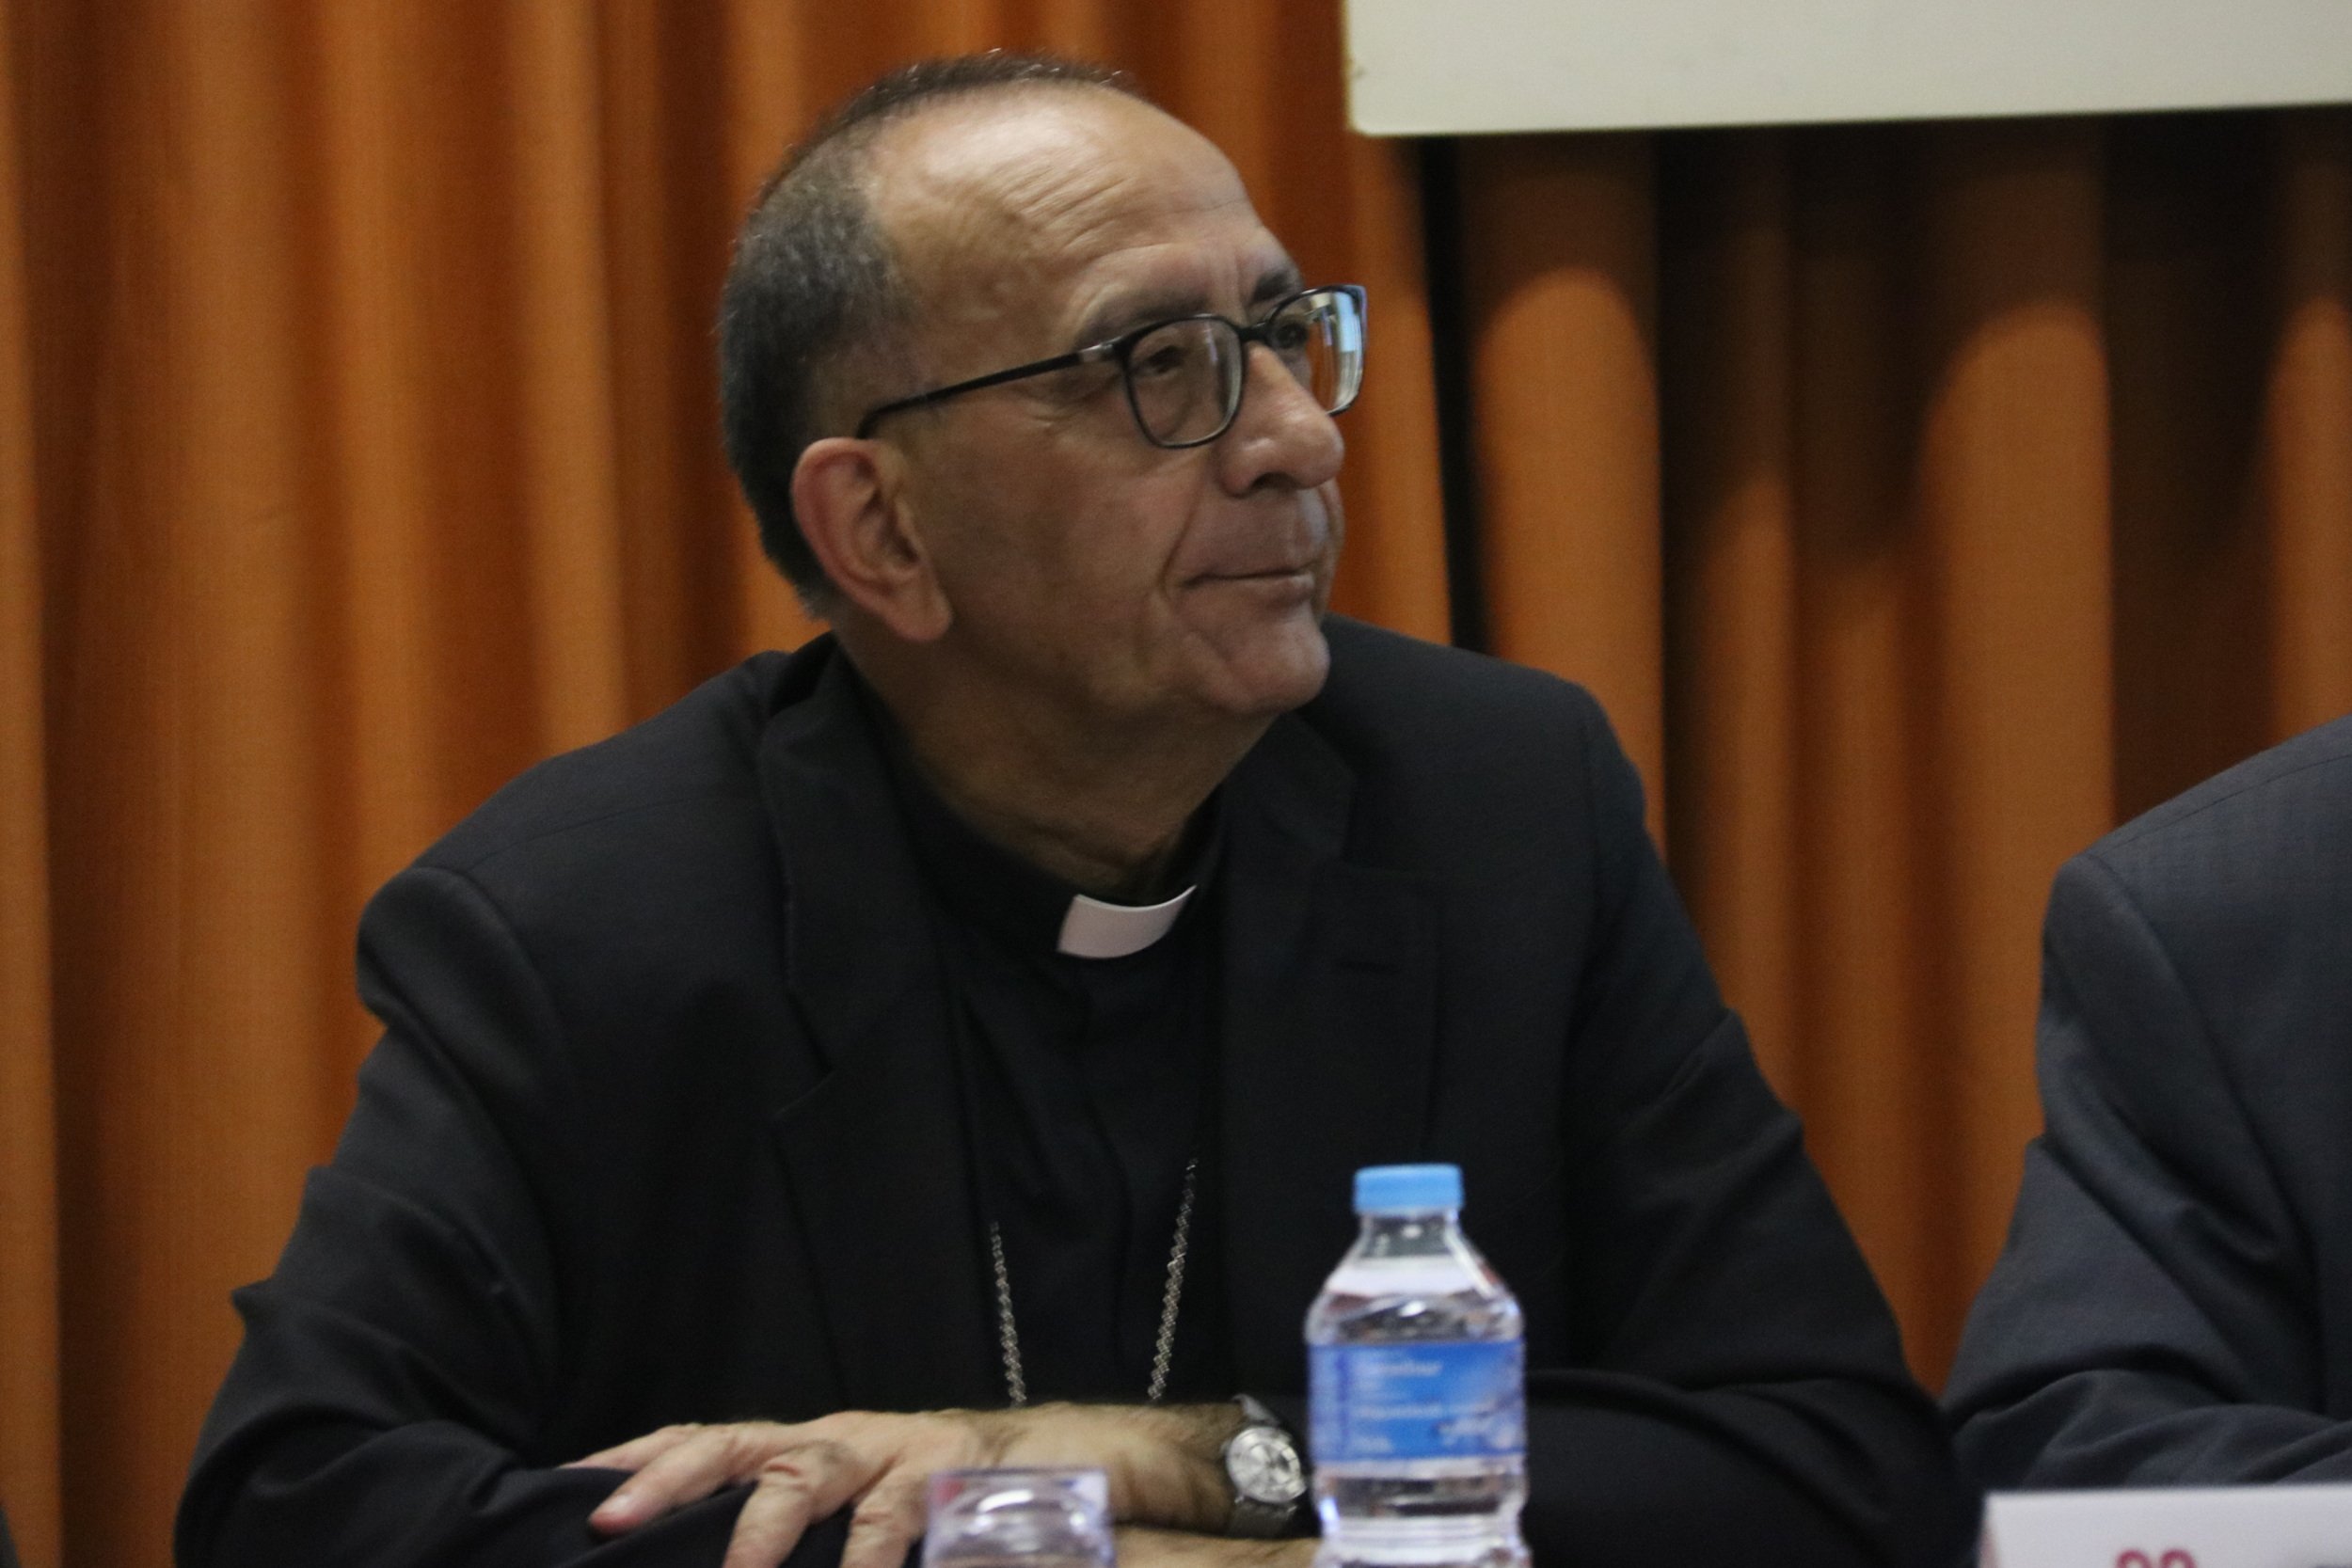 Un equipo laico y externo asesorará al obispado de Barcelona en los casos de abusos